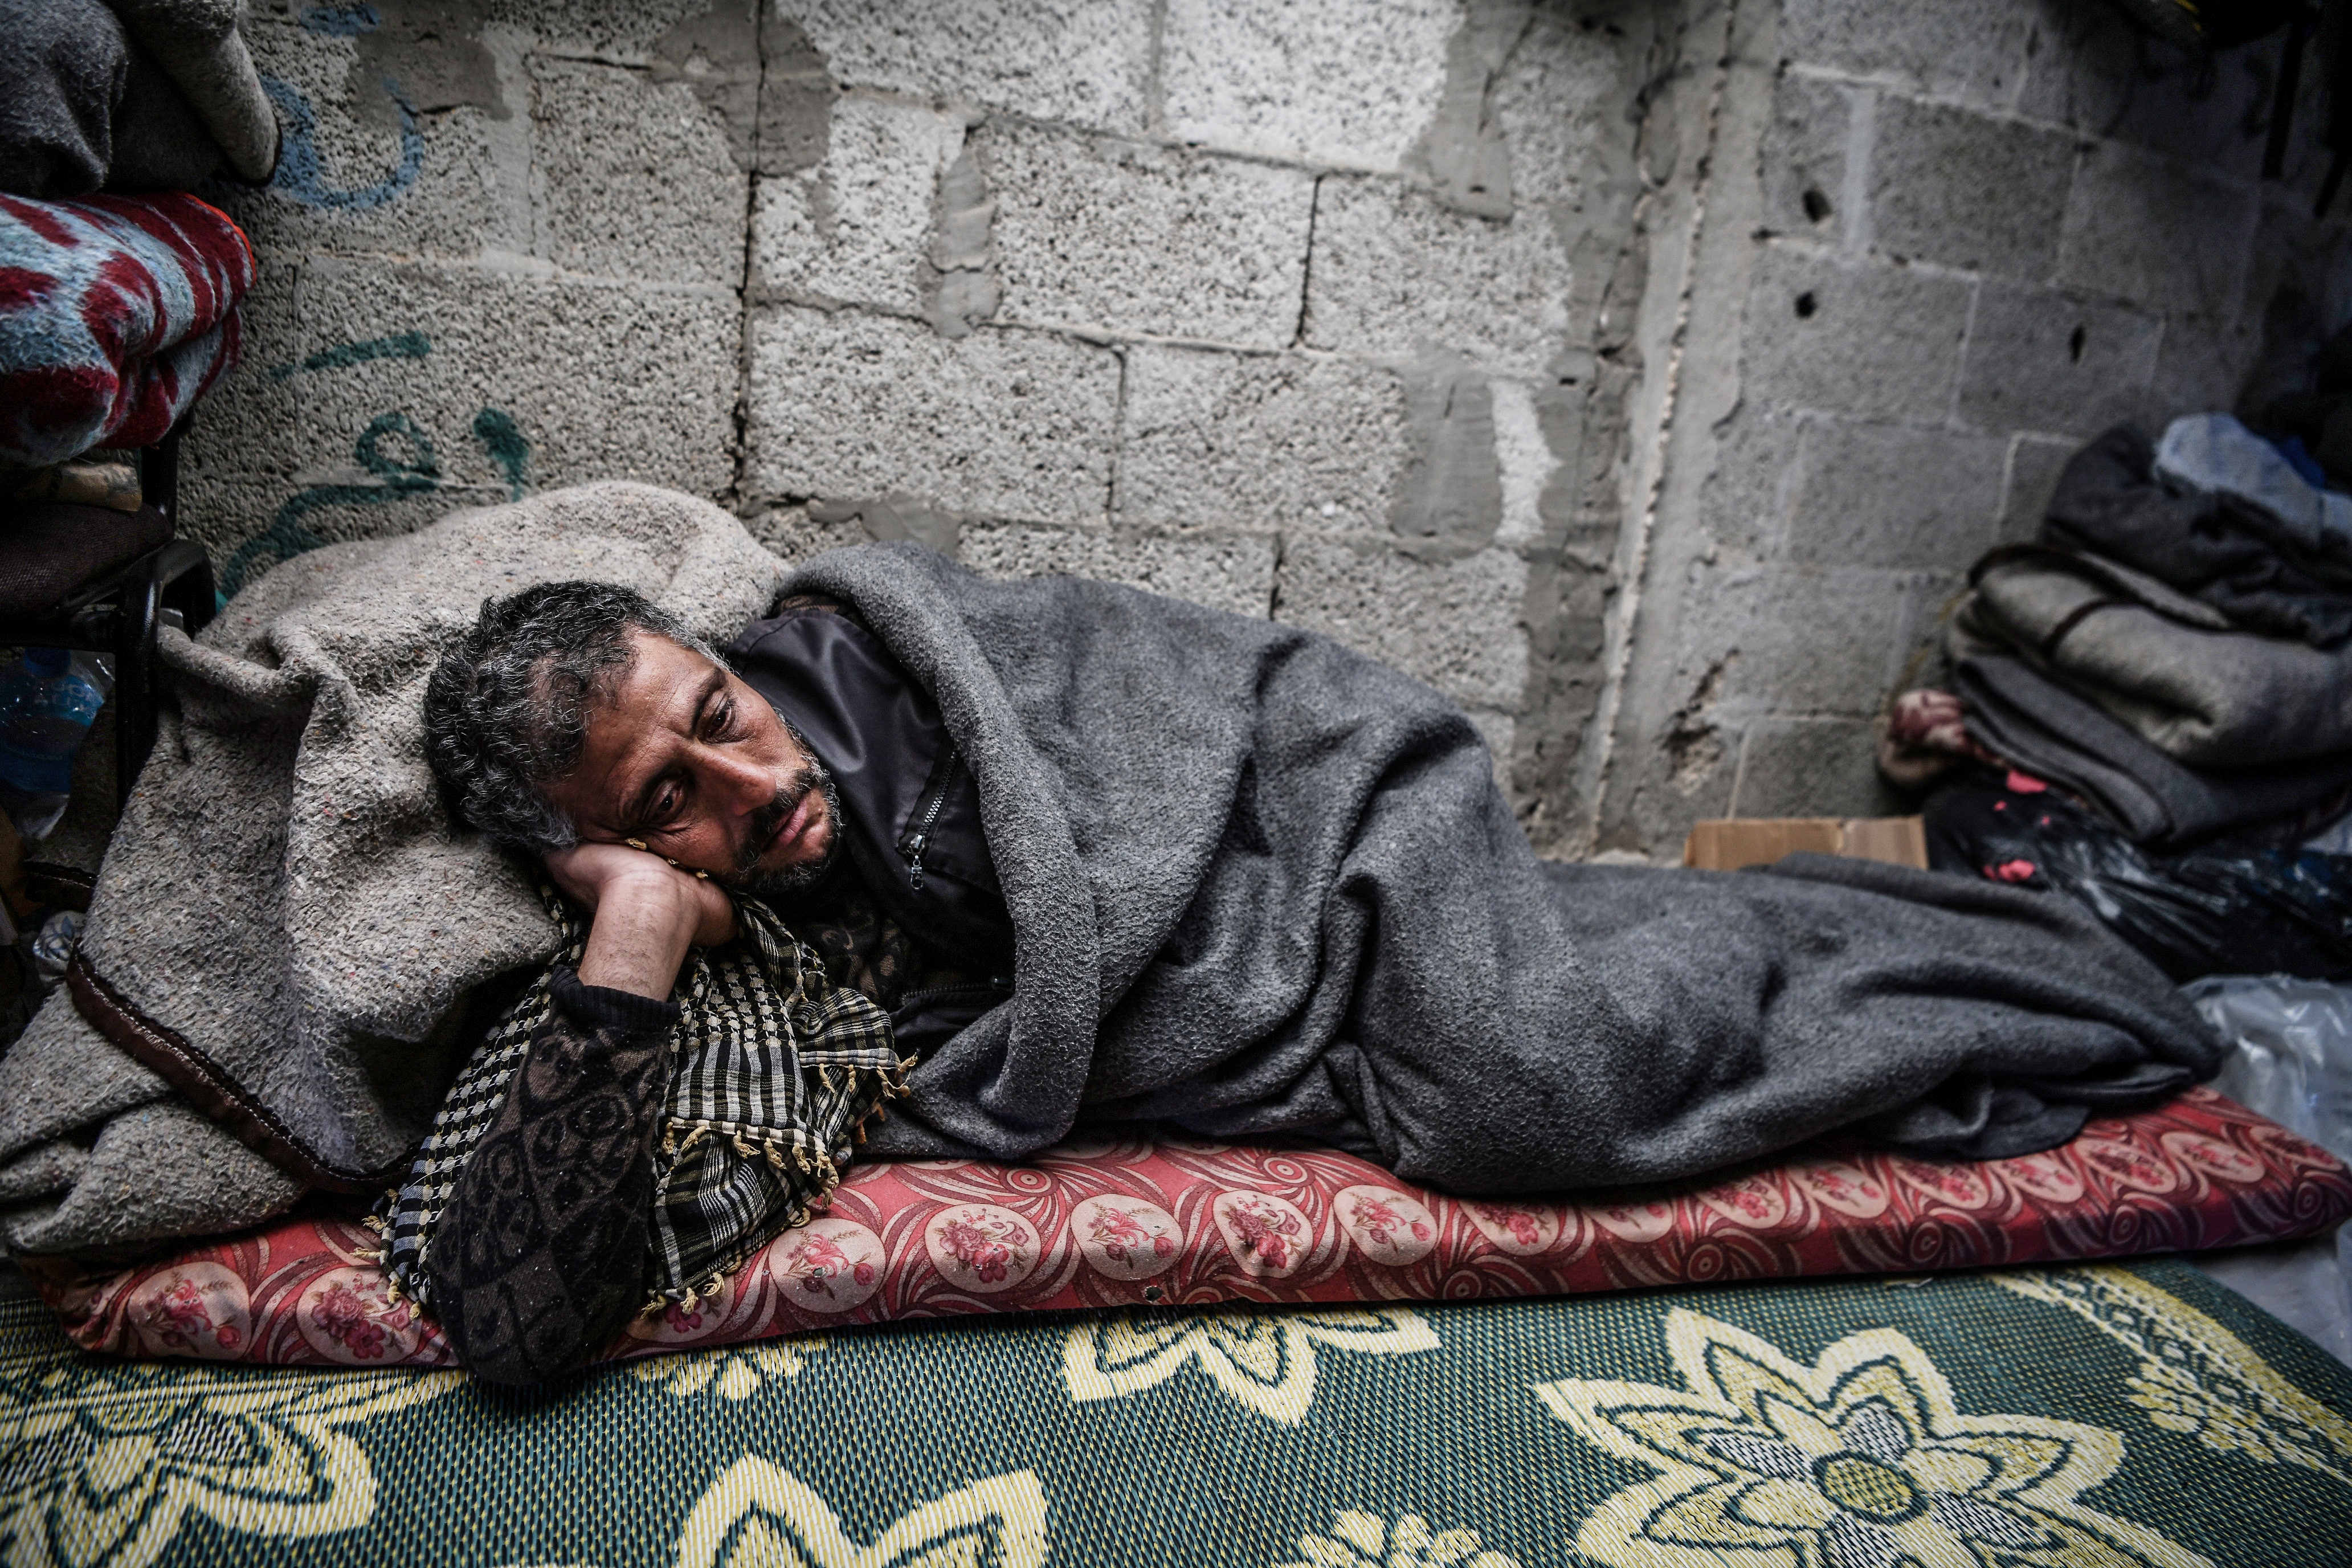 Filistinliler, çadırlarda yaşam mücadelesi veriyor!